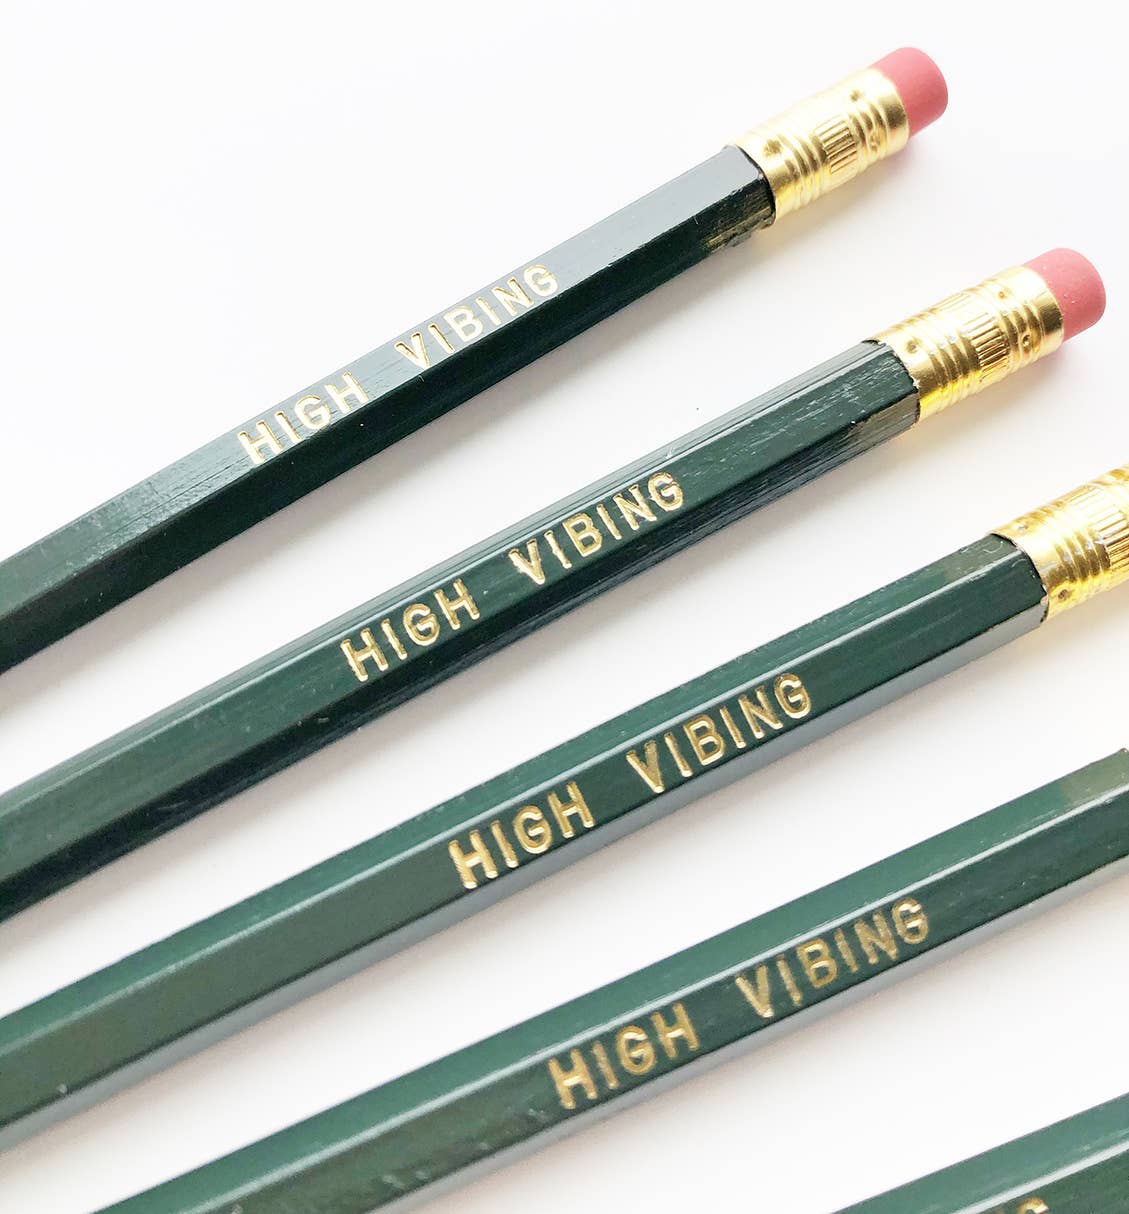 High Vibing pencil set